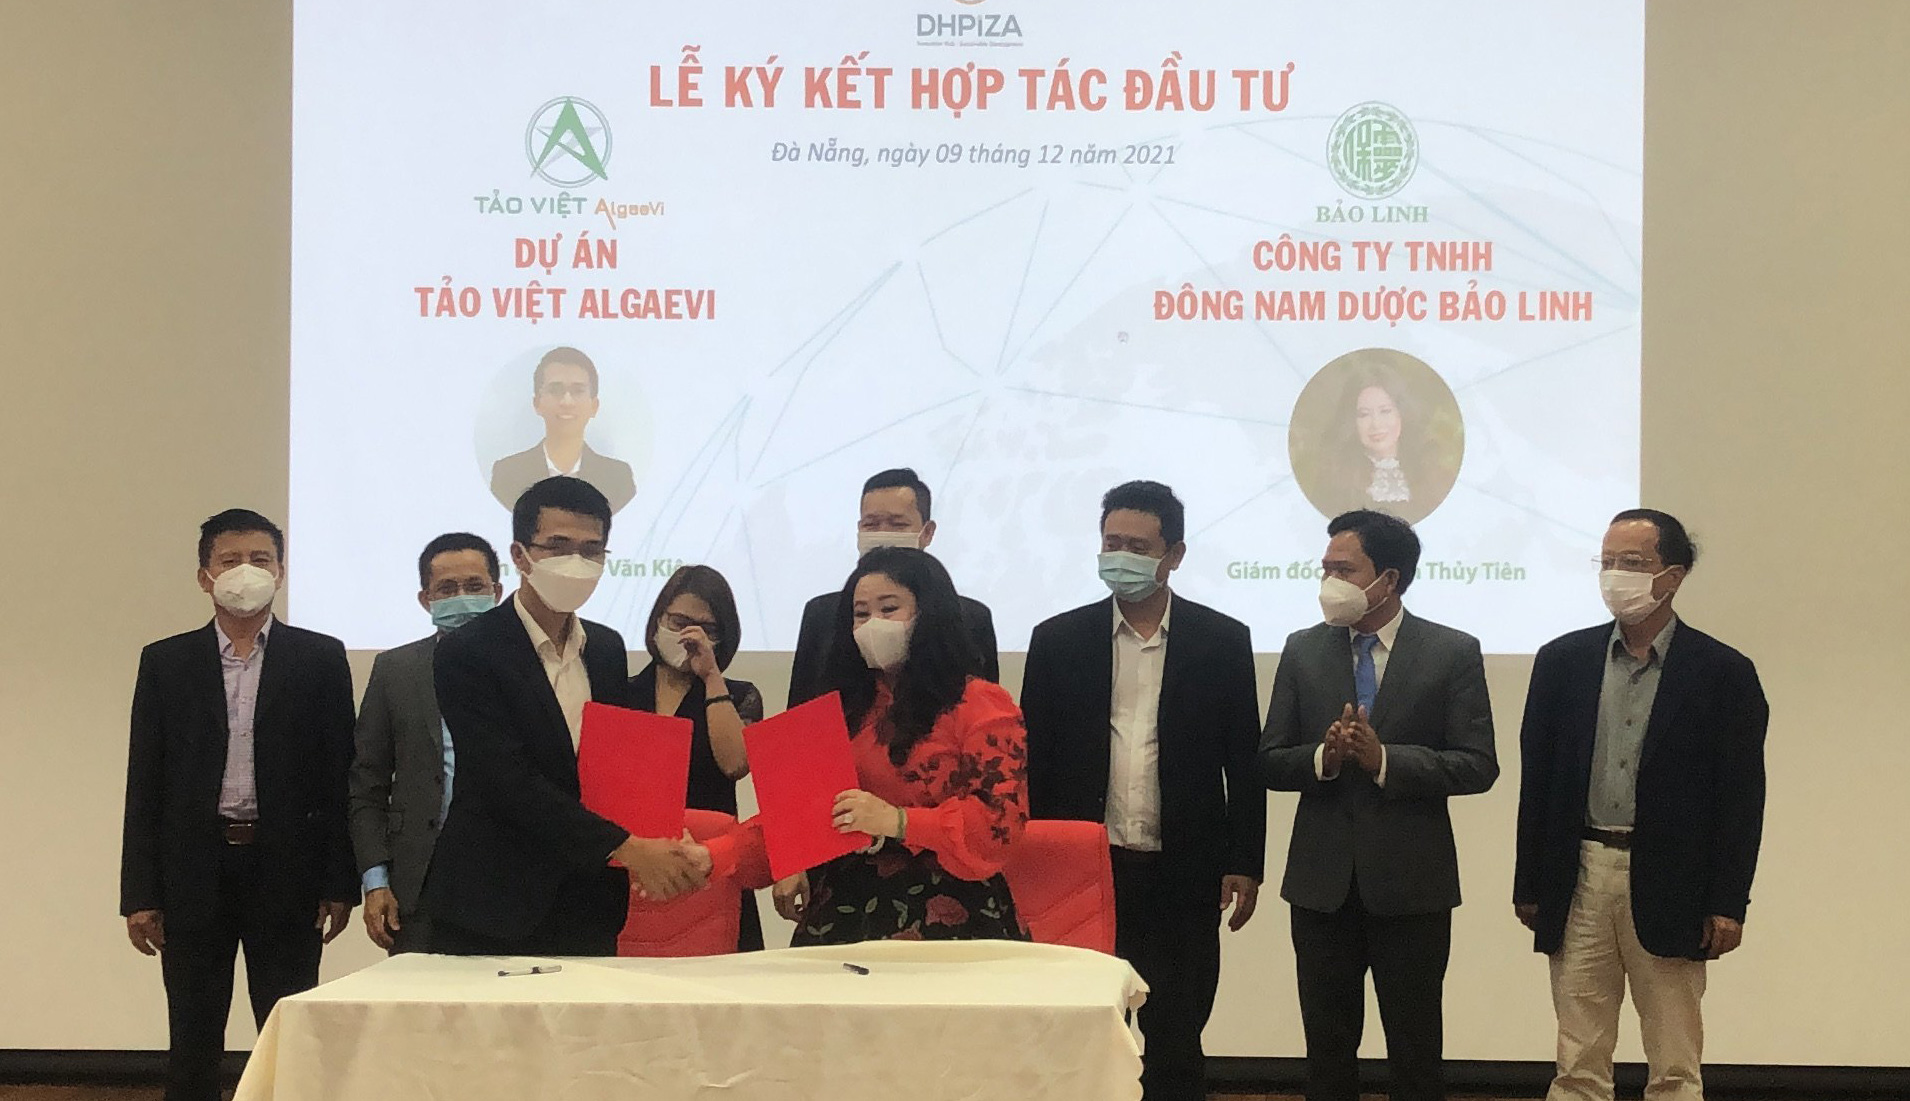 Ký kết hợp tác giữa đại diện dự án Tảo Việt AlgaeVi với doanh nghiệp để phát triển sản phẩm ra thị trường. (Ảnh do nhân vật cung cấp)